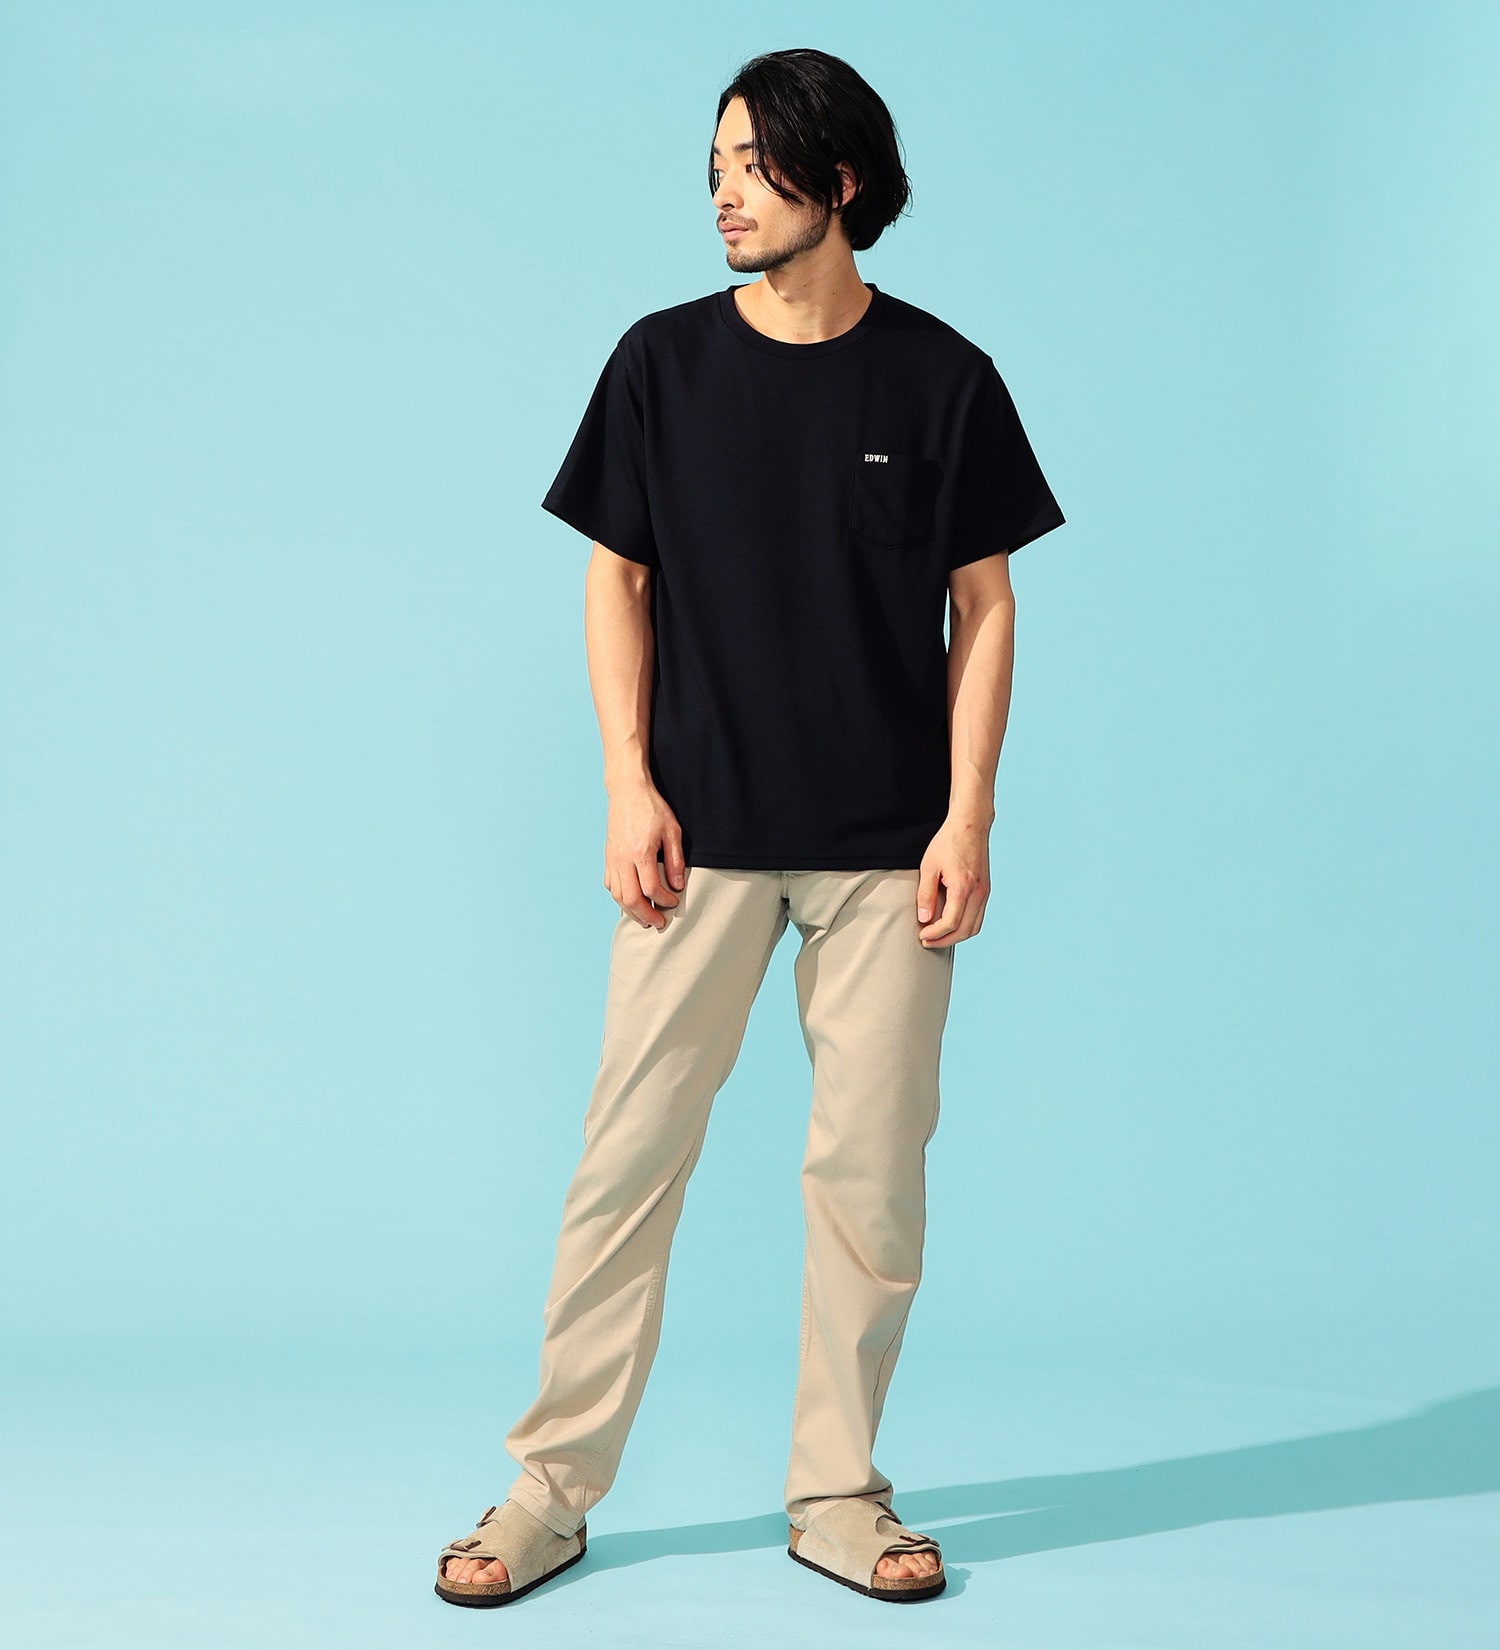 EDWIN(エドウイン)のCOOL FLEX Tシャツ 半袖|トップス/Tシャツ/カットソー/メンズ|ブラック